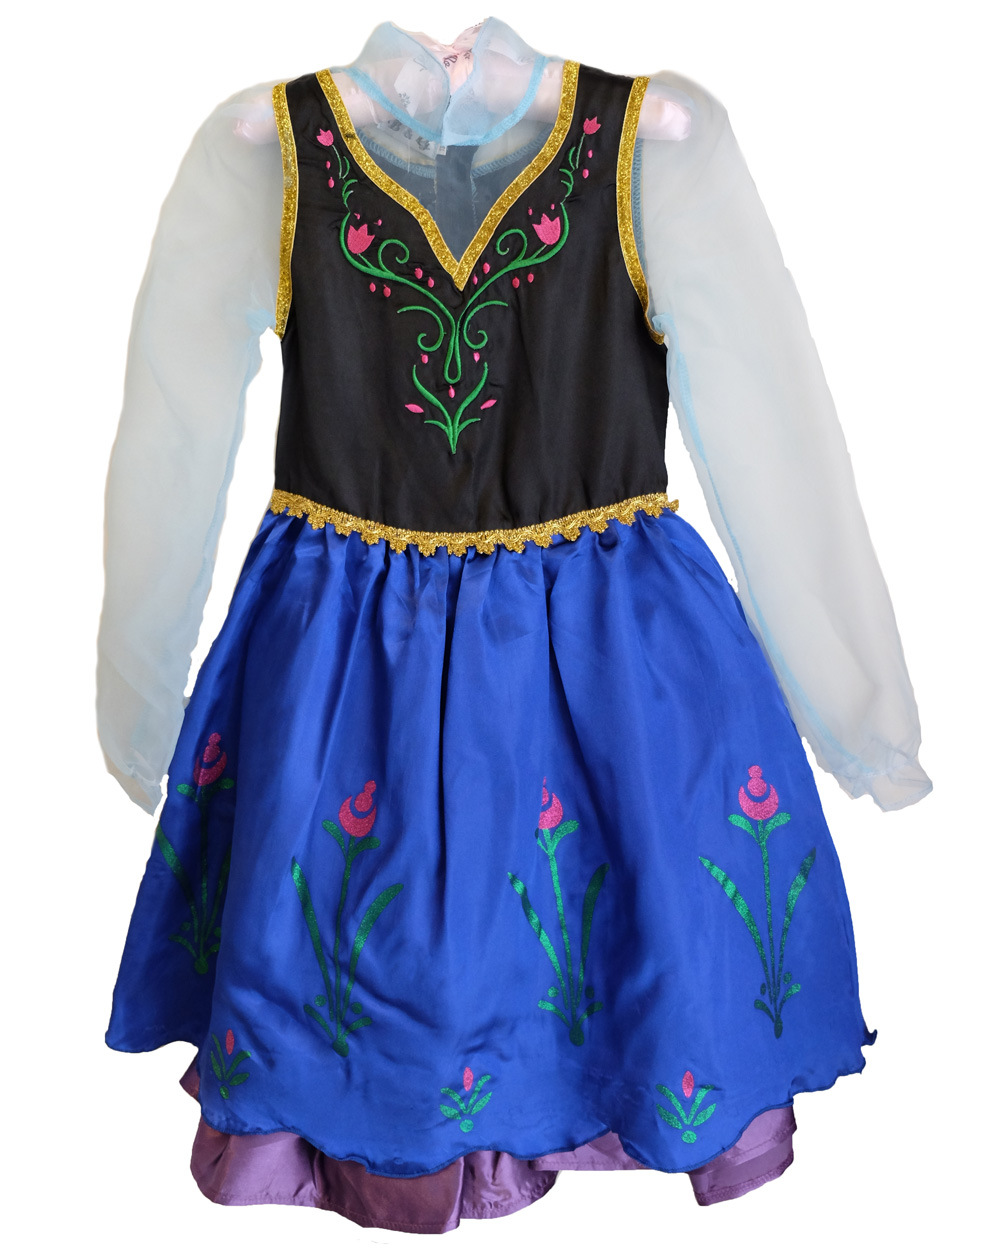 CFR Frozen Princess Anna Elsa Queen Dress Child Toddler Girls Book Week Costume